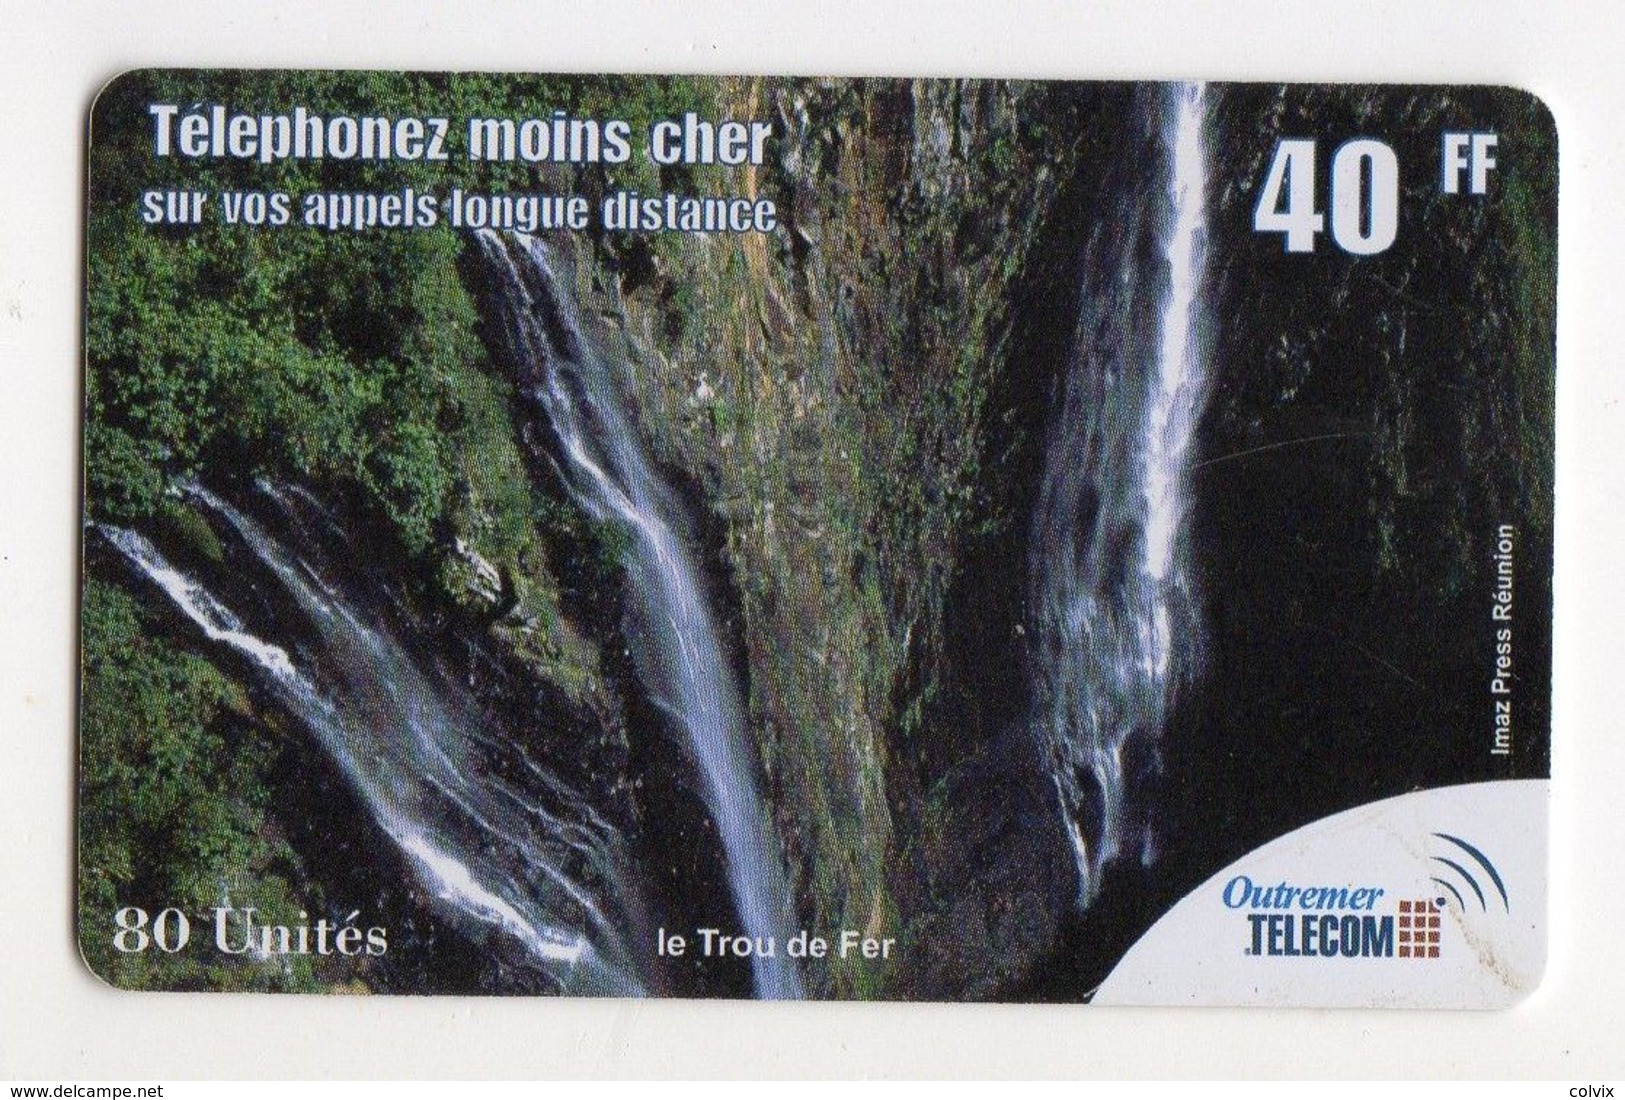 ANTILLES FRANCAISE PREPAYEE OUTREMER TELECOM LE TROU DE FER 40FF - Antilles (French)